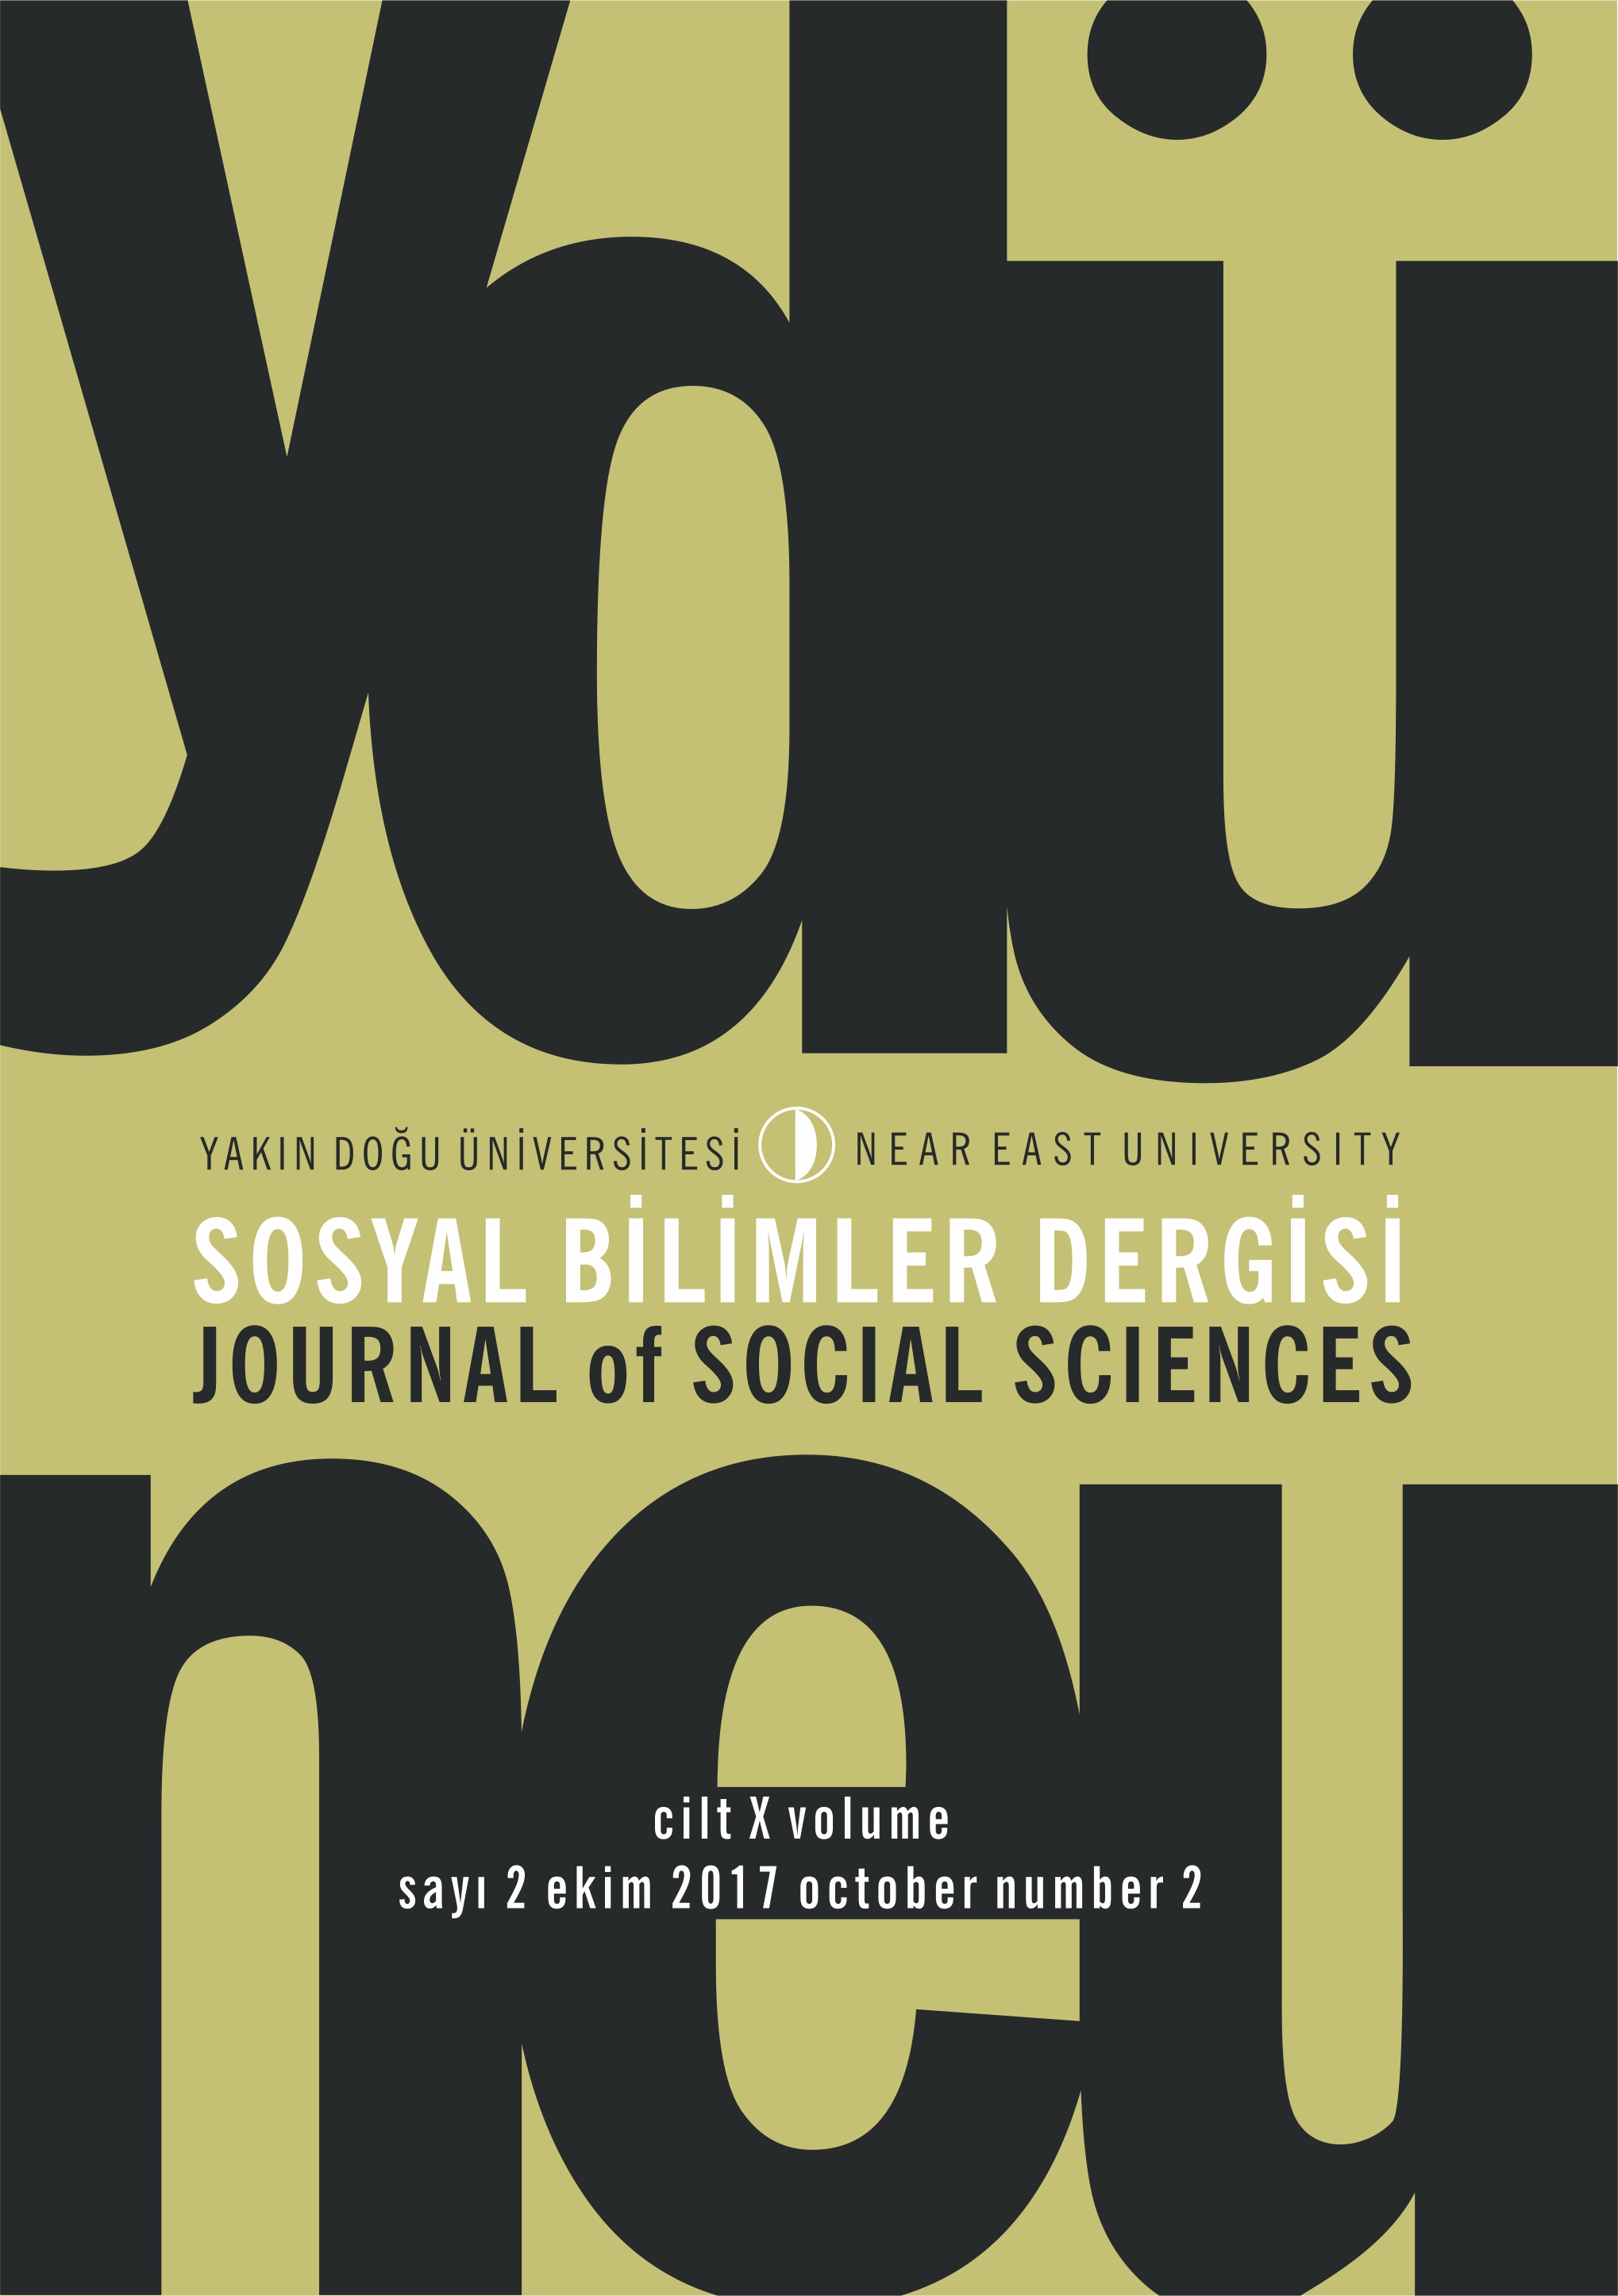 					Cilt 10 Sayı 2 (2017): Yakın Doğu Üniversitesi Sosyal Bilimler Dergisi Gör
				